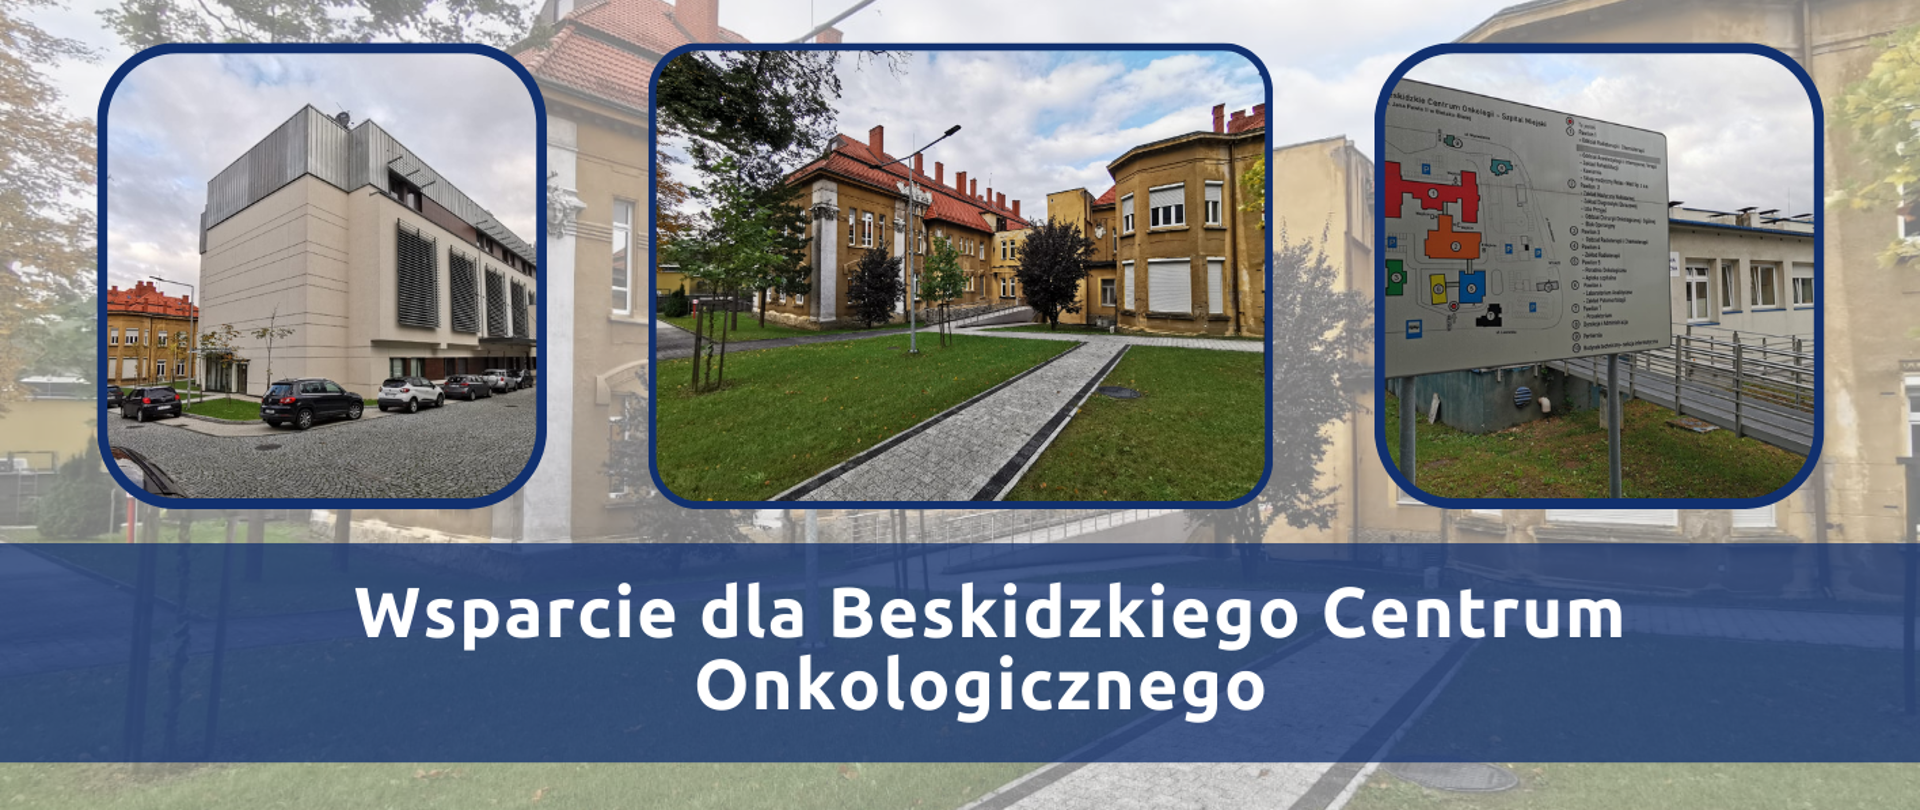 Rozwój leczenia onkologicznego w Bielsku-Białej – wsparcie dla Beskidzkiego Centrum Onkologicznego